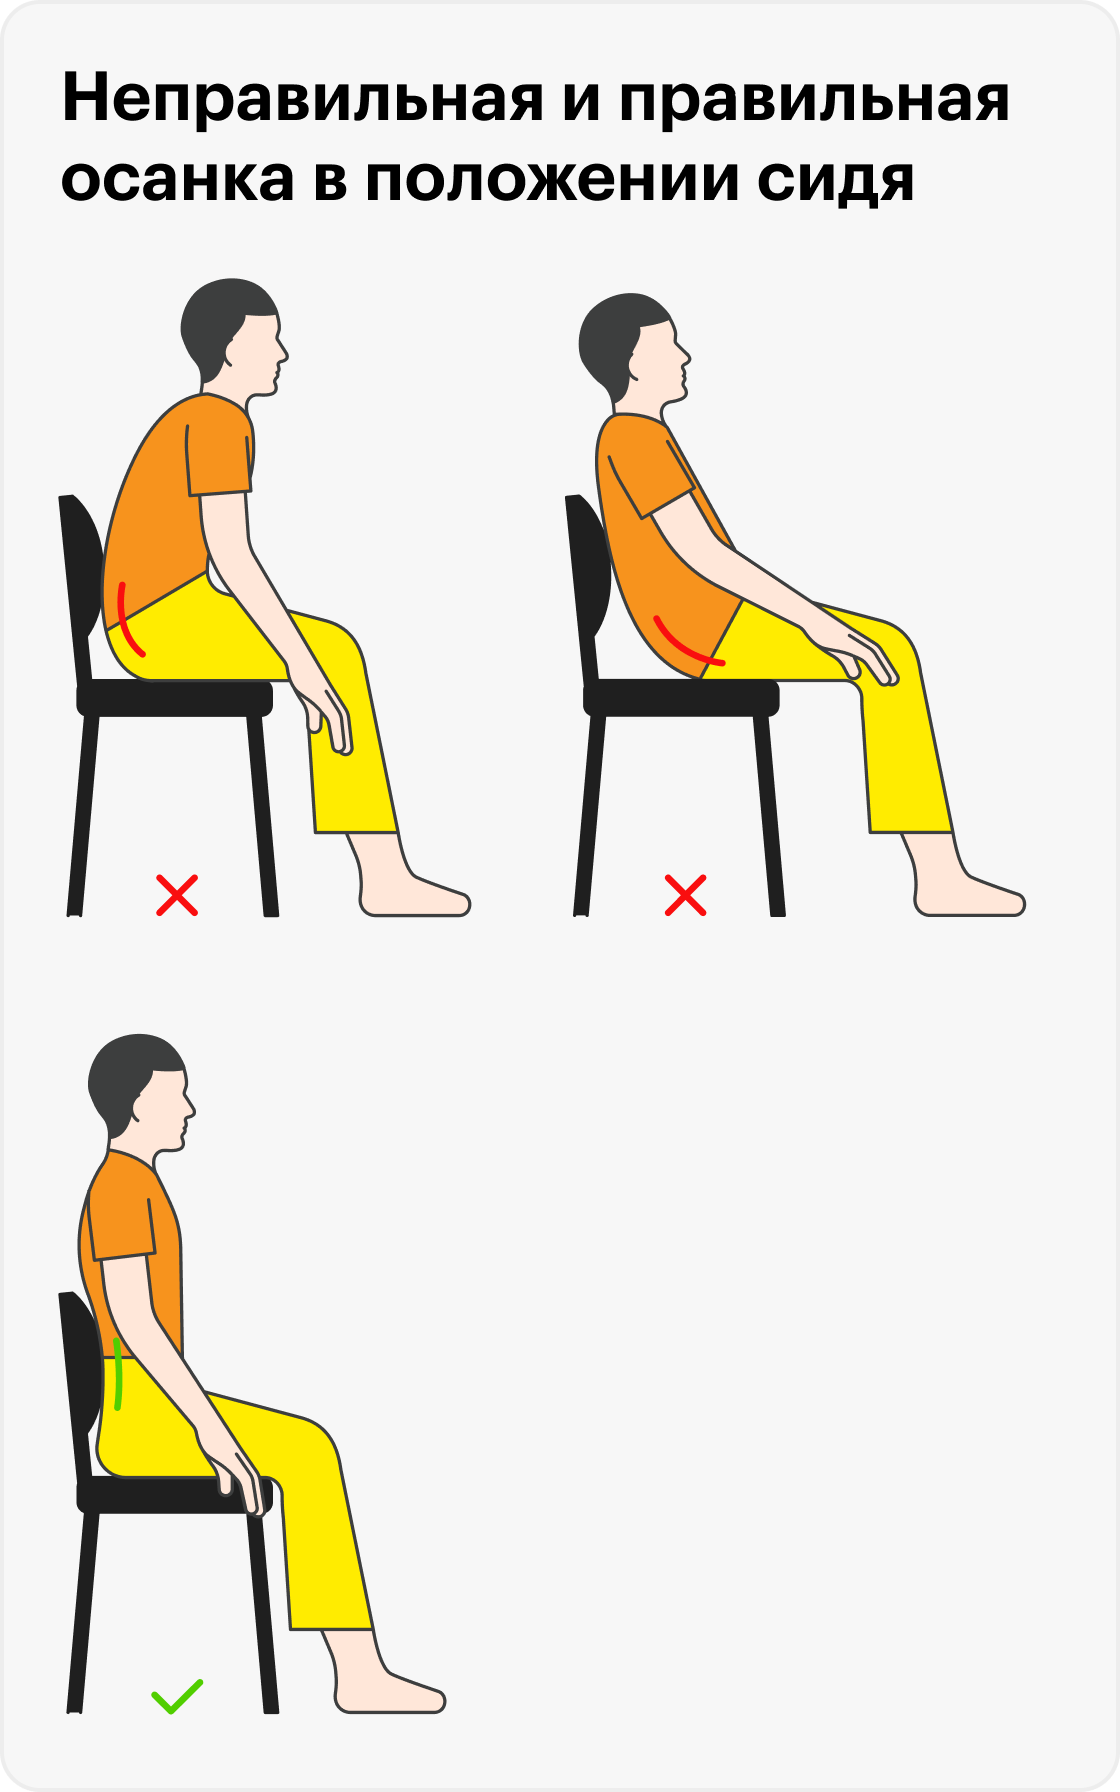 Положение с прямой спиной считается оптимальным для&nbsp;правильного распределения нагрузки на позвонки, но пока нет исследований, подтверждающих связь неправильной осанки с болями в спине